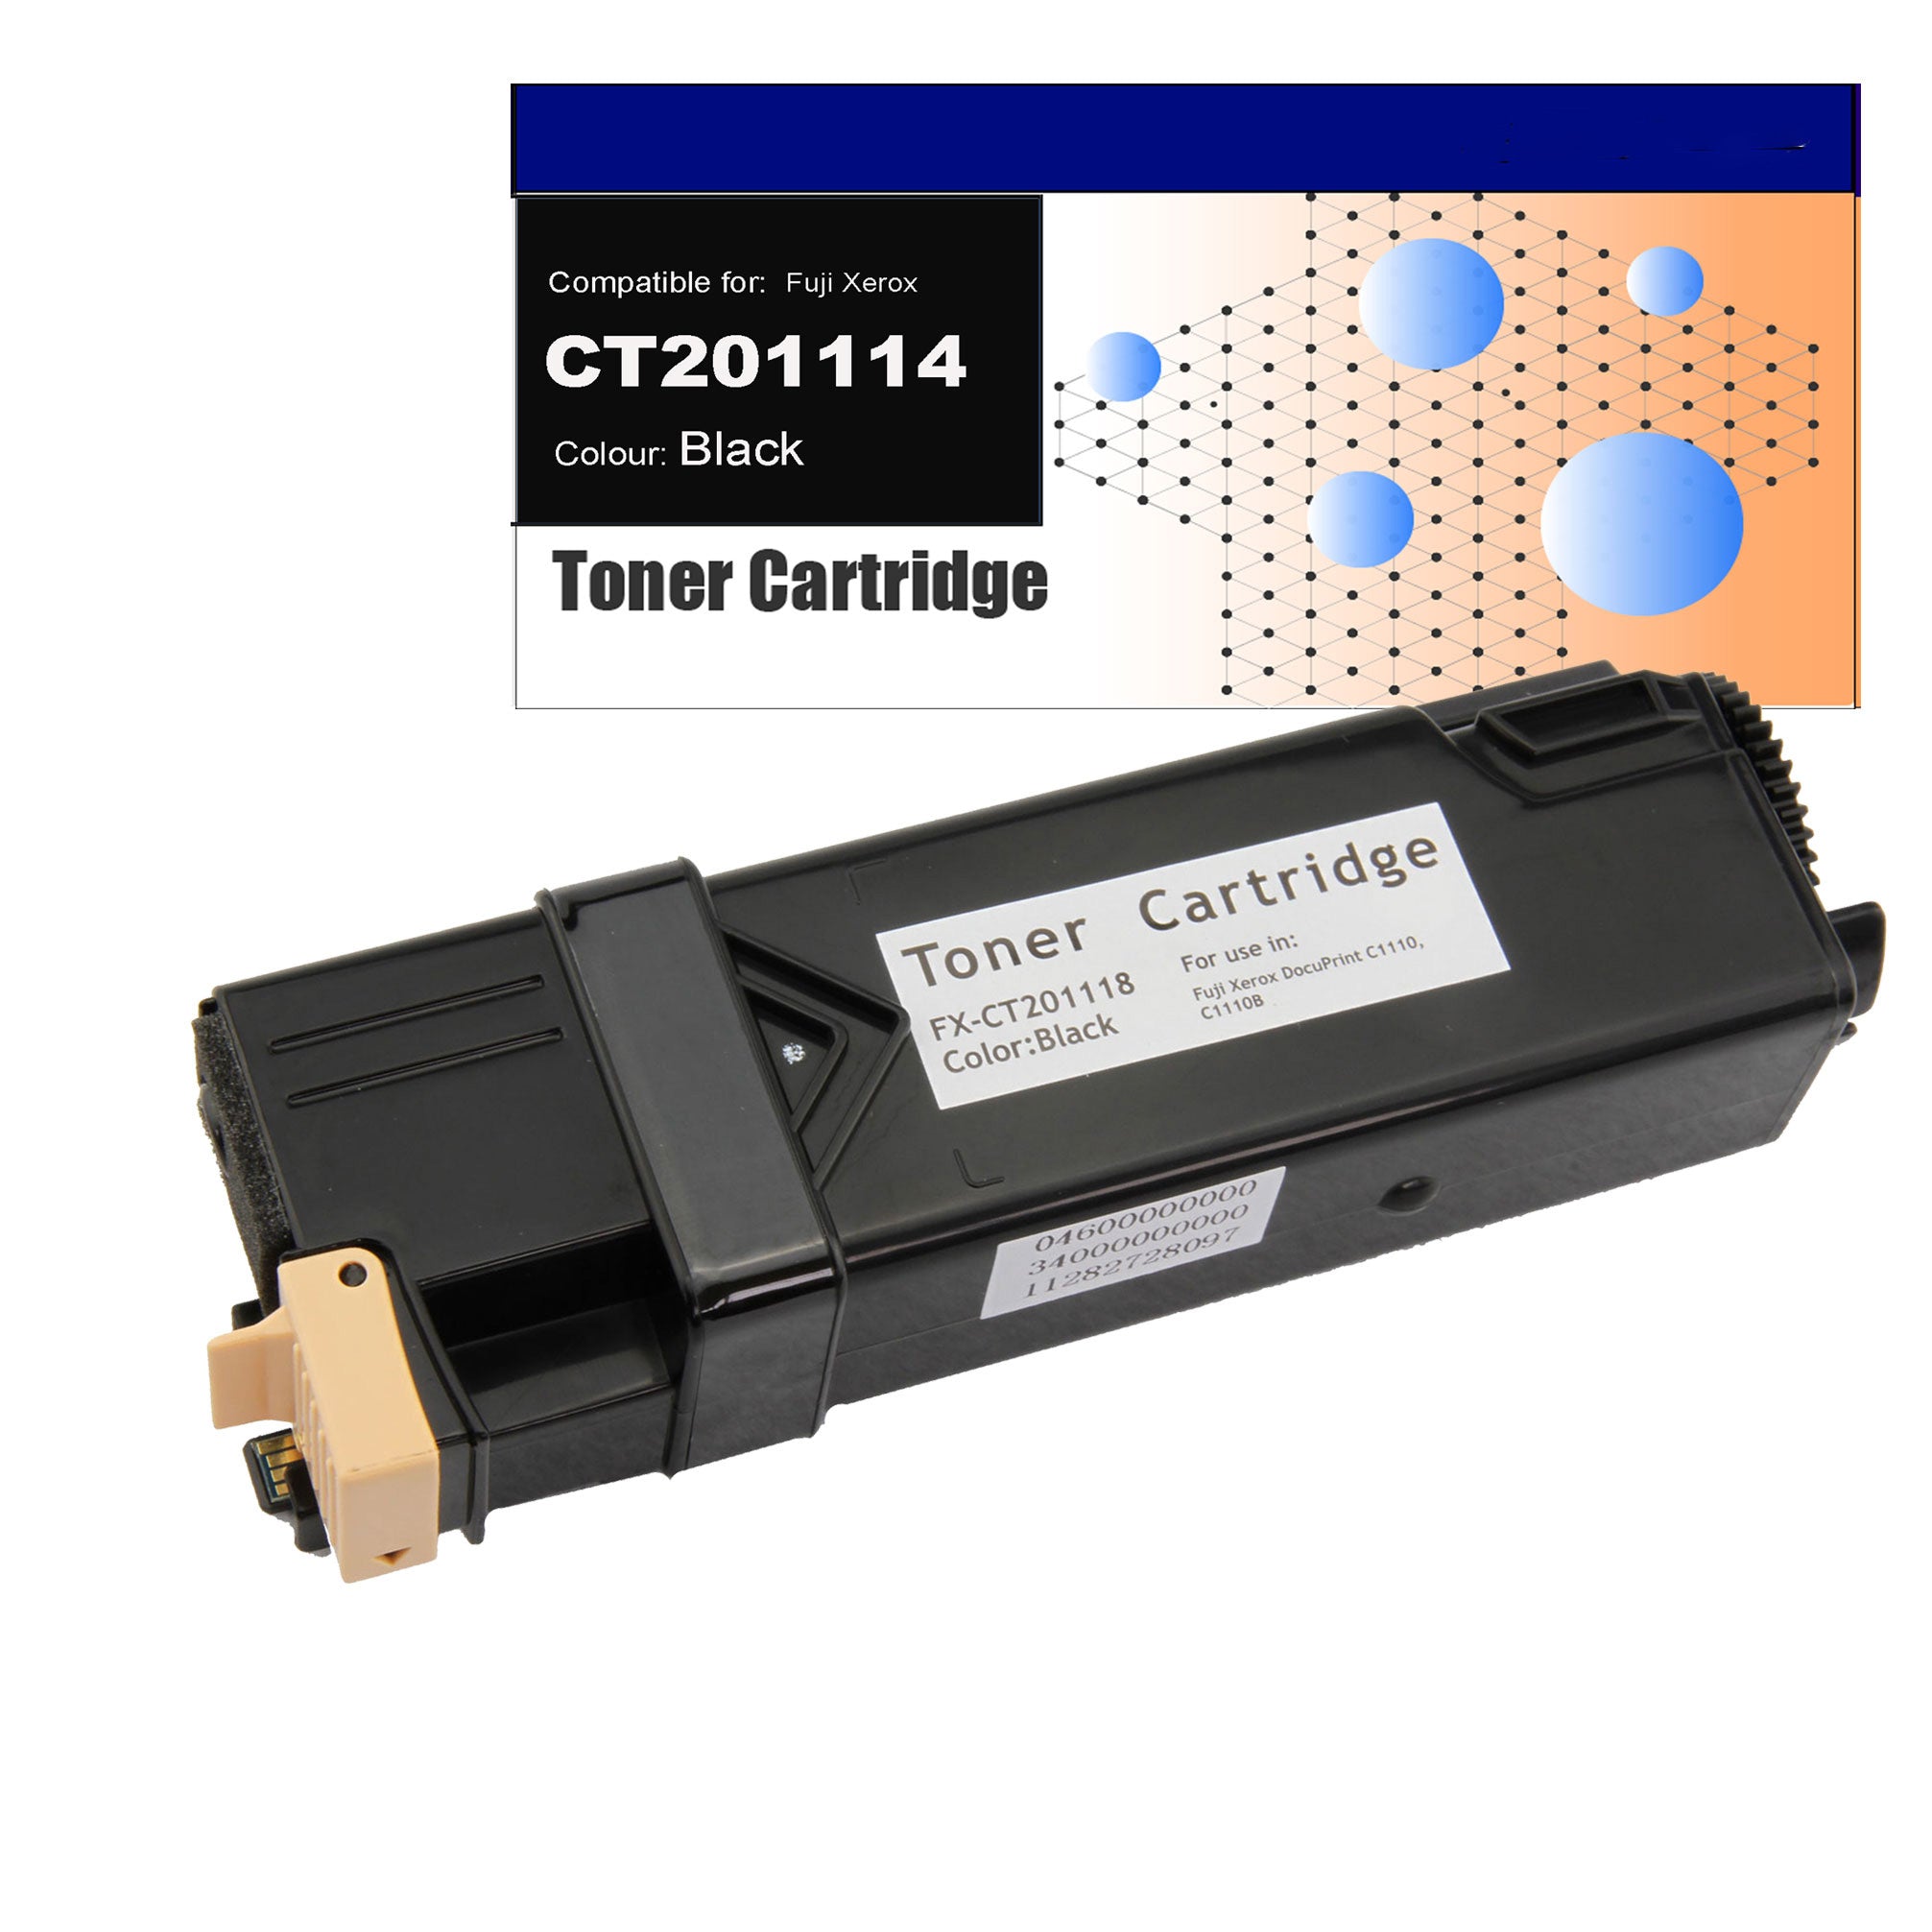 Compatible Toner for Fuji Xerox CT201114 (C1110) Black Toner Cartridges